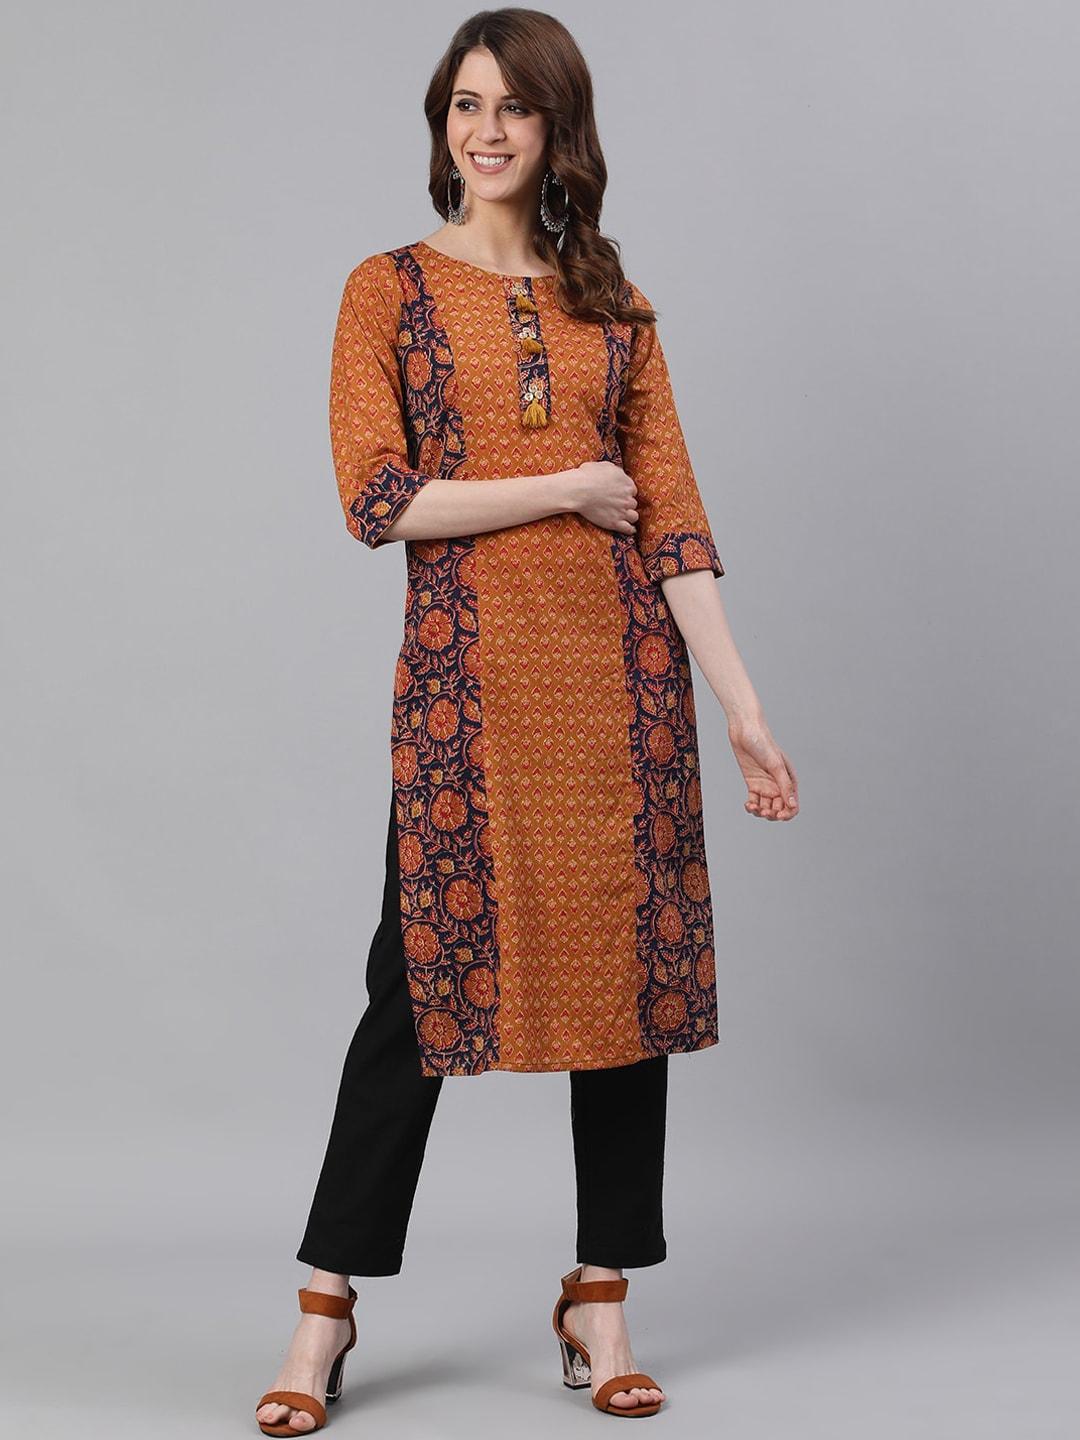 jaipur-kurti-women-mustard-brown-&-black-ethnic-motifs-printed-kurta